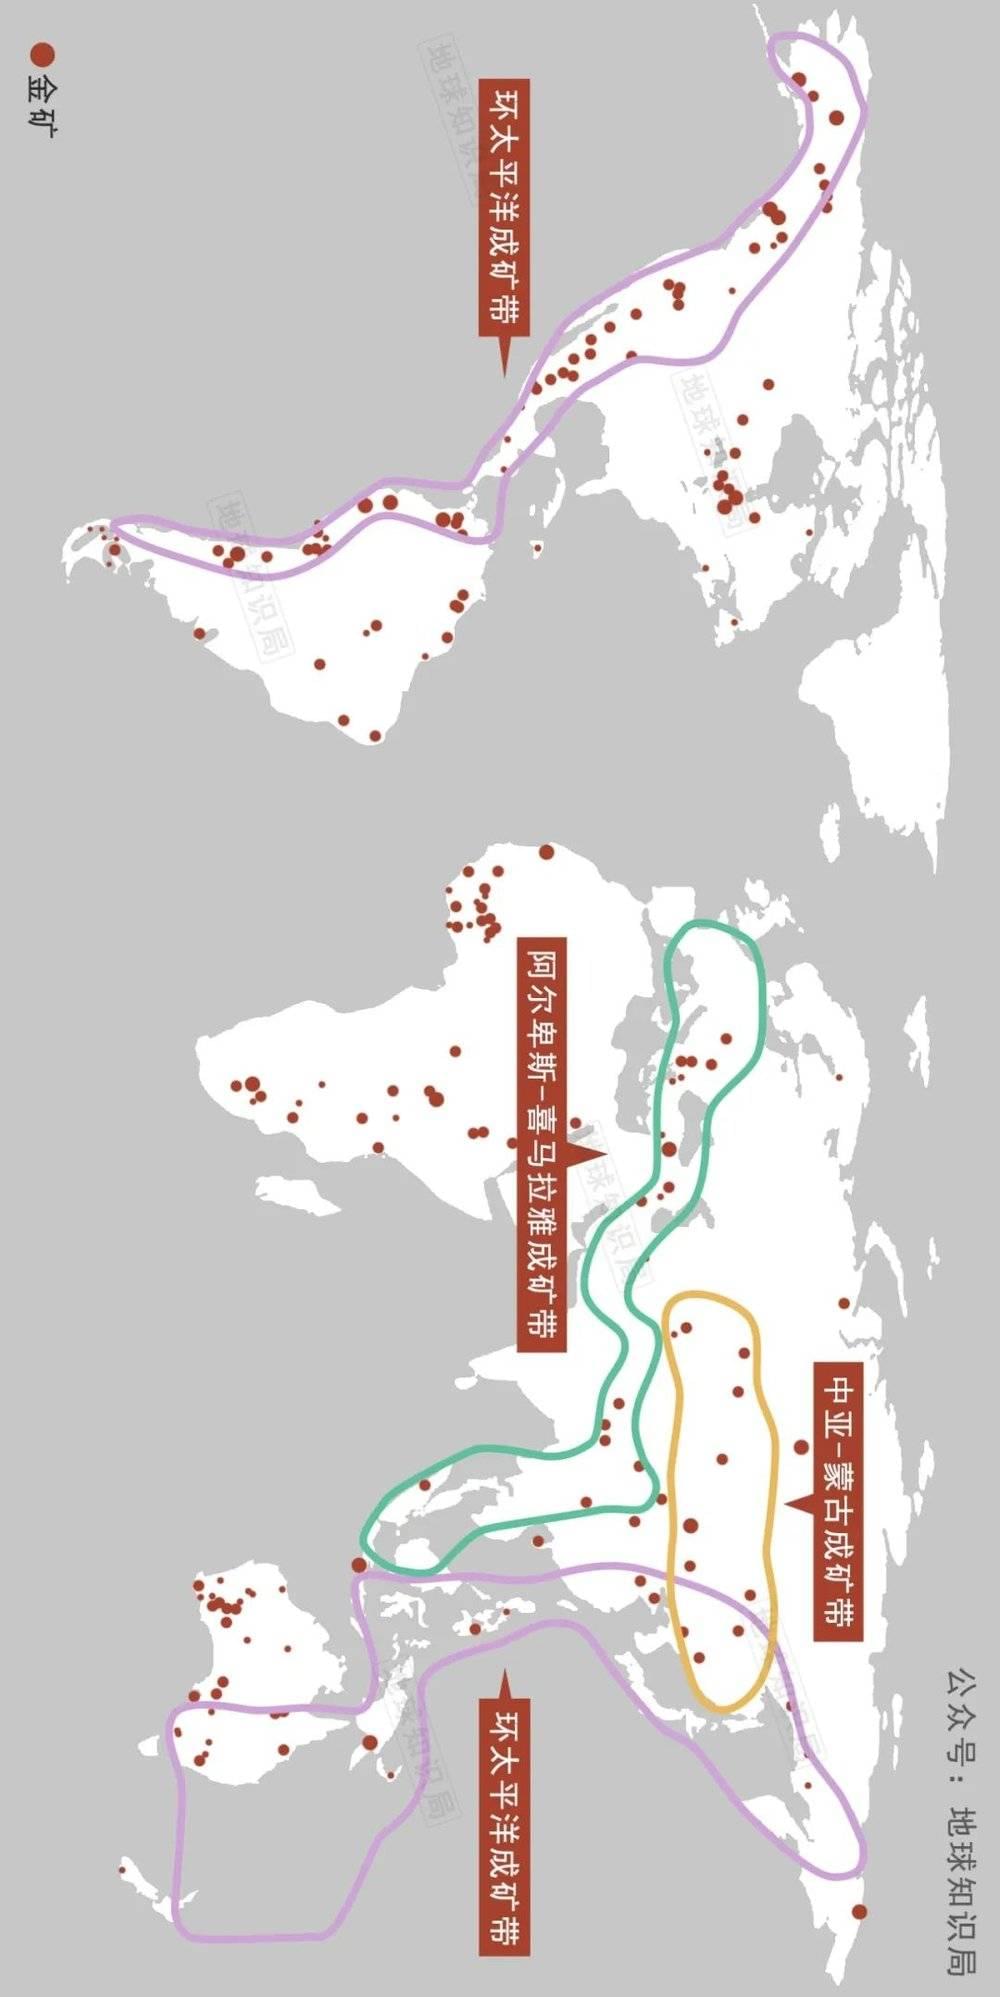 2000年至2011年发现的金矿的规模和位置，环太平洋成矿区上的金矿嘎嘎多